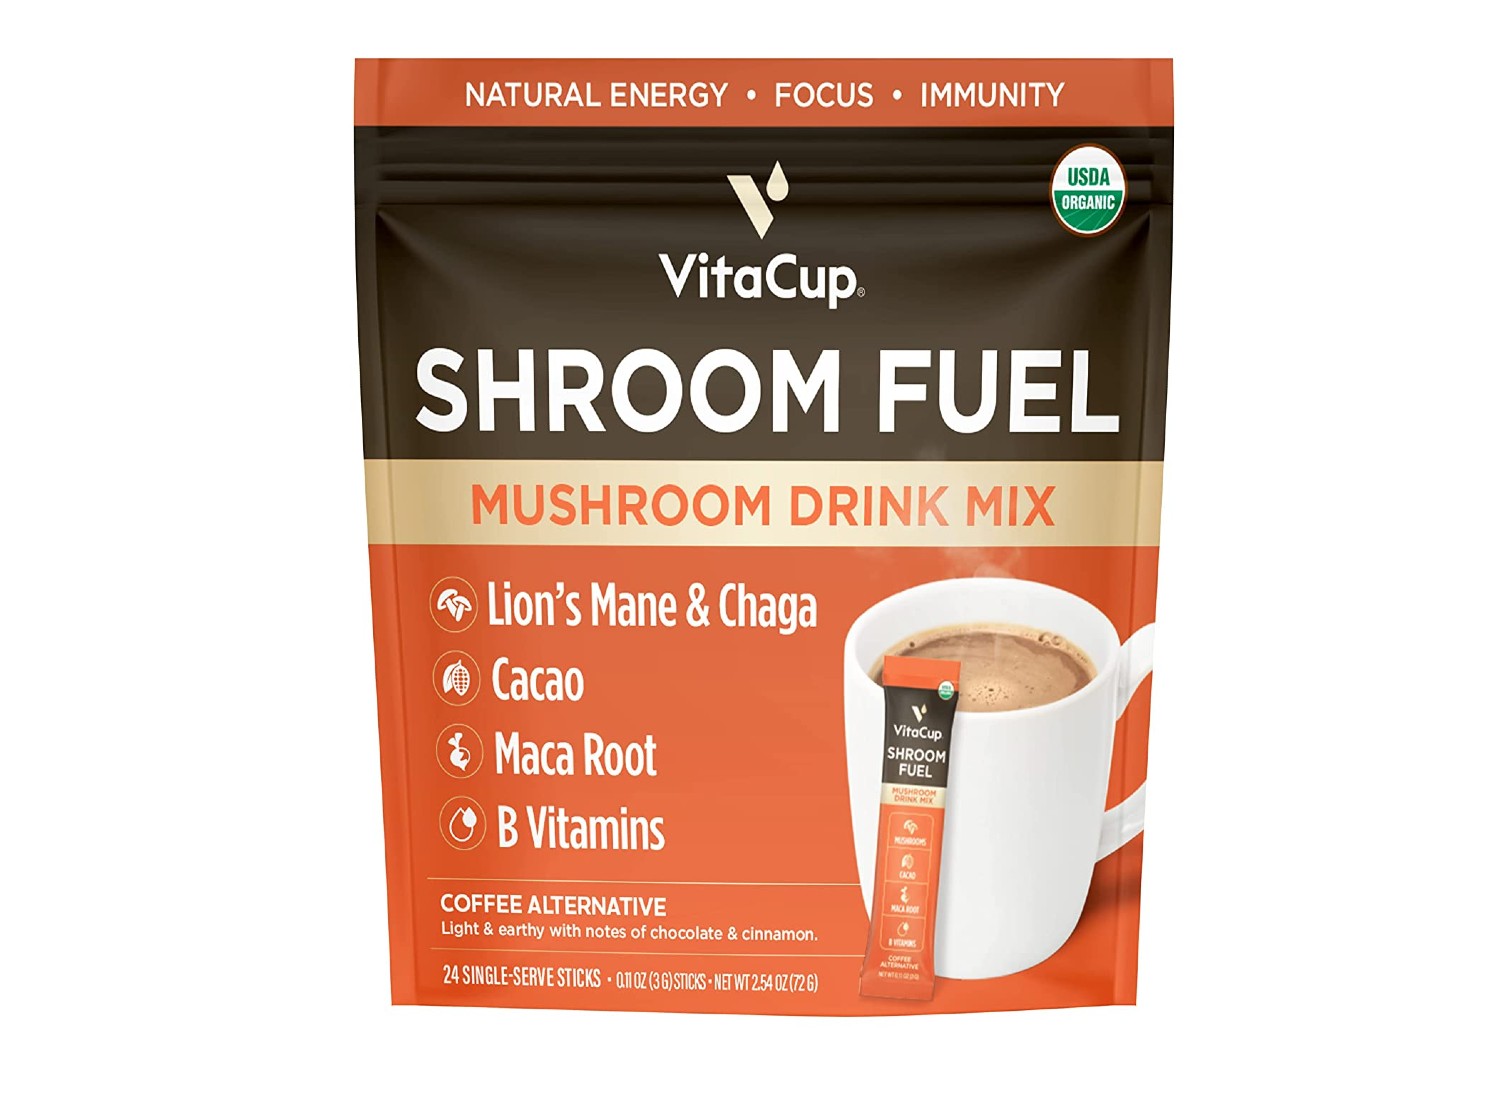 VitaCup Shroom Fuel sold on Amazon